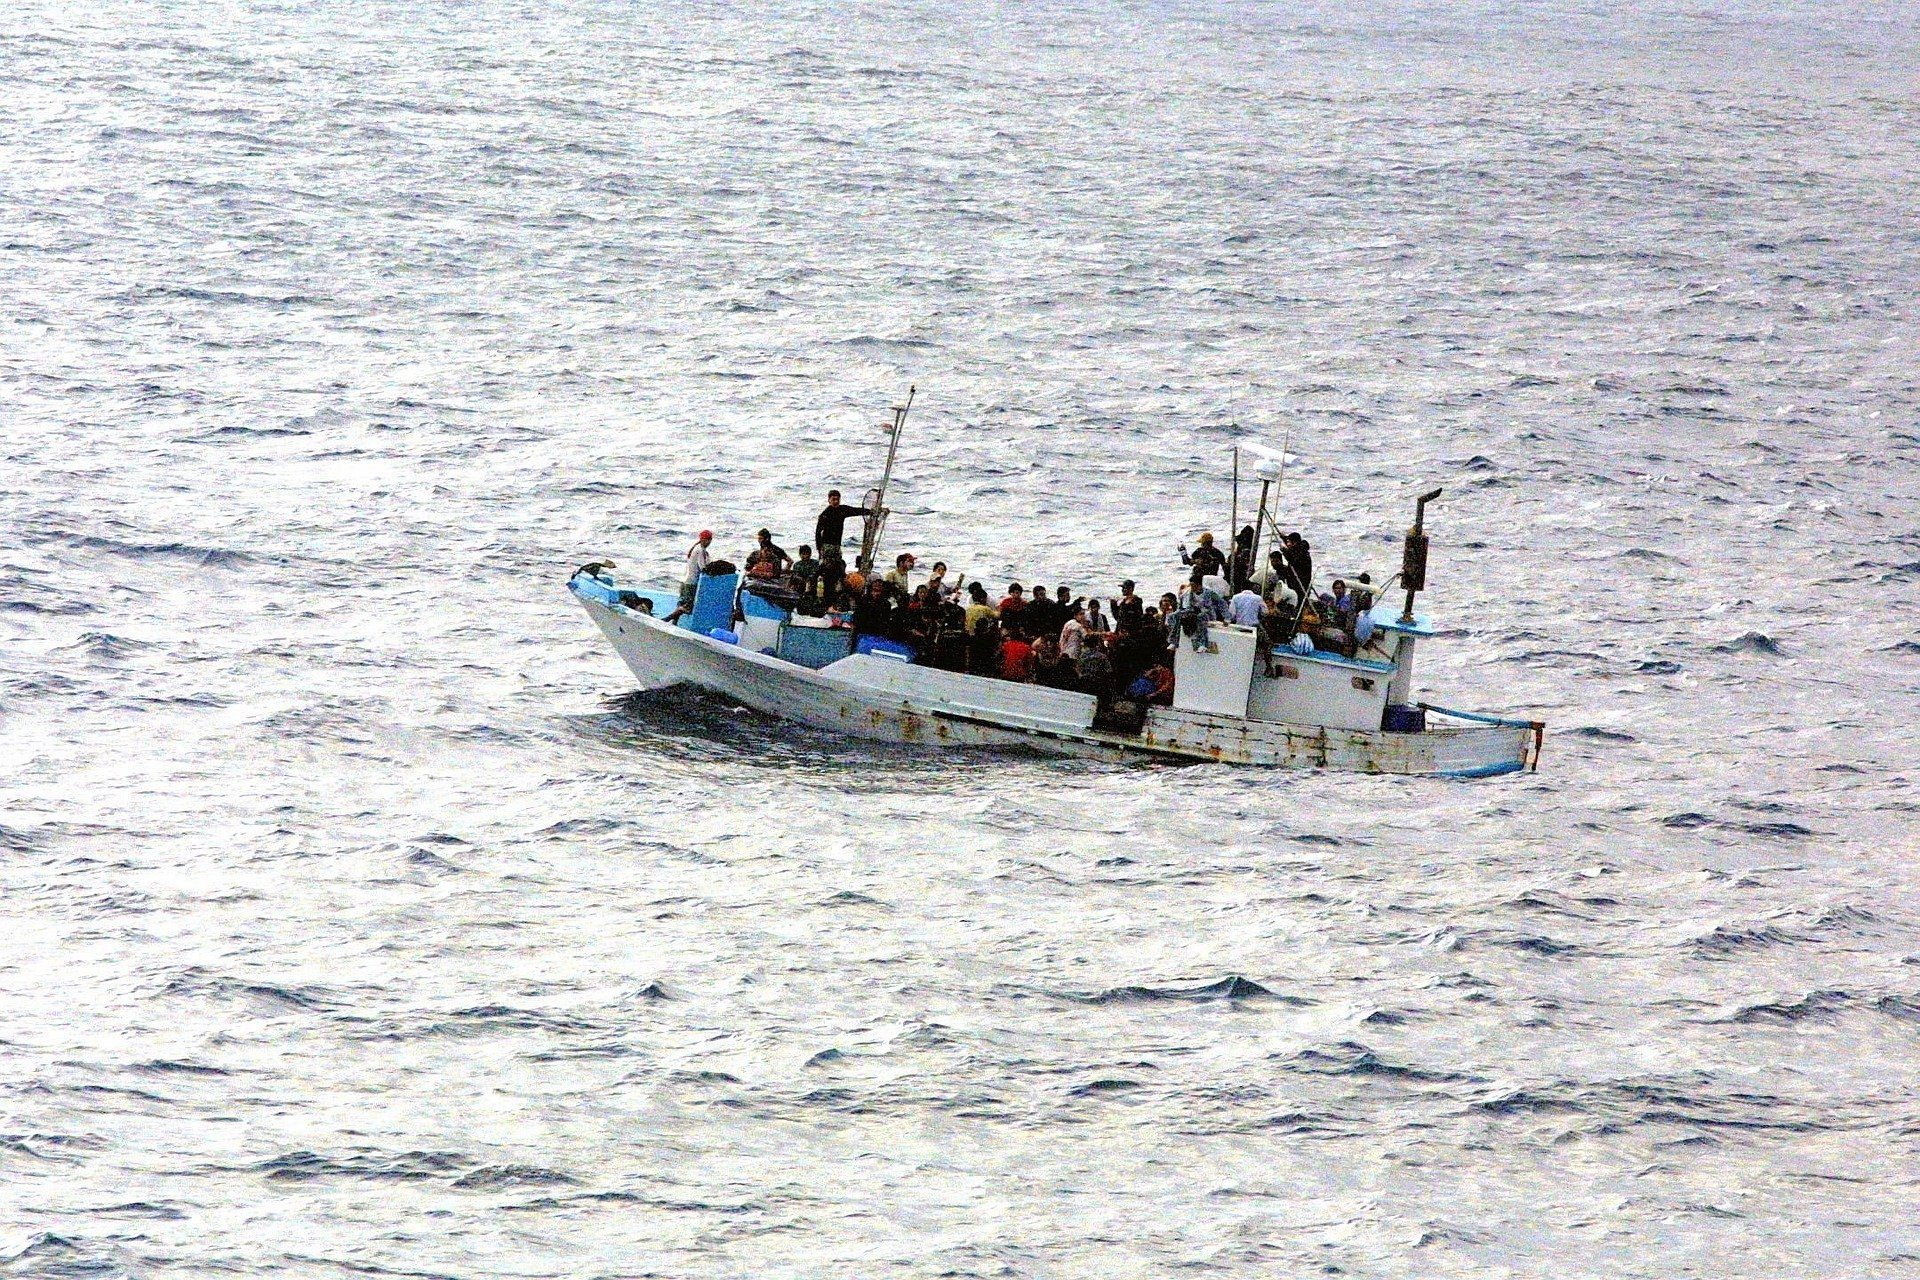 Una embarcación en el mar con refugiados a bordo con el propósito de migrar / Foto: Gerd Altmann - Pixabay